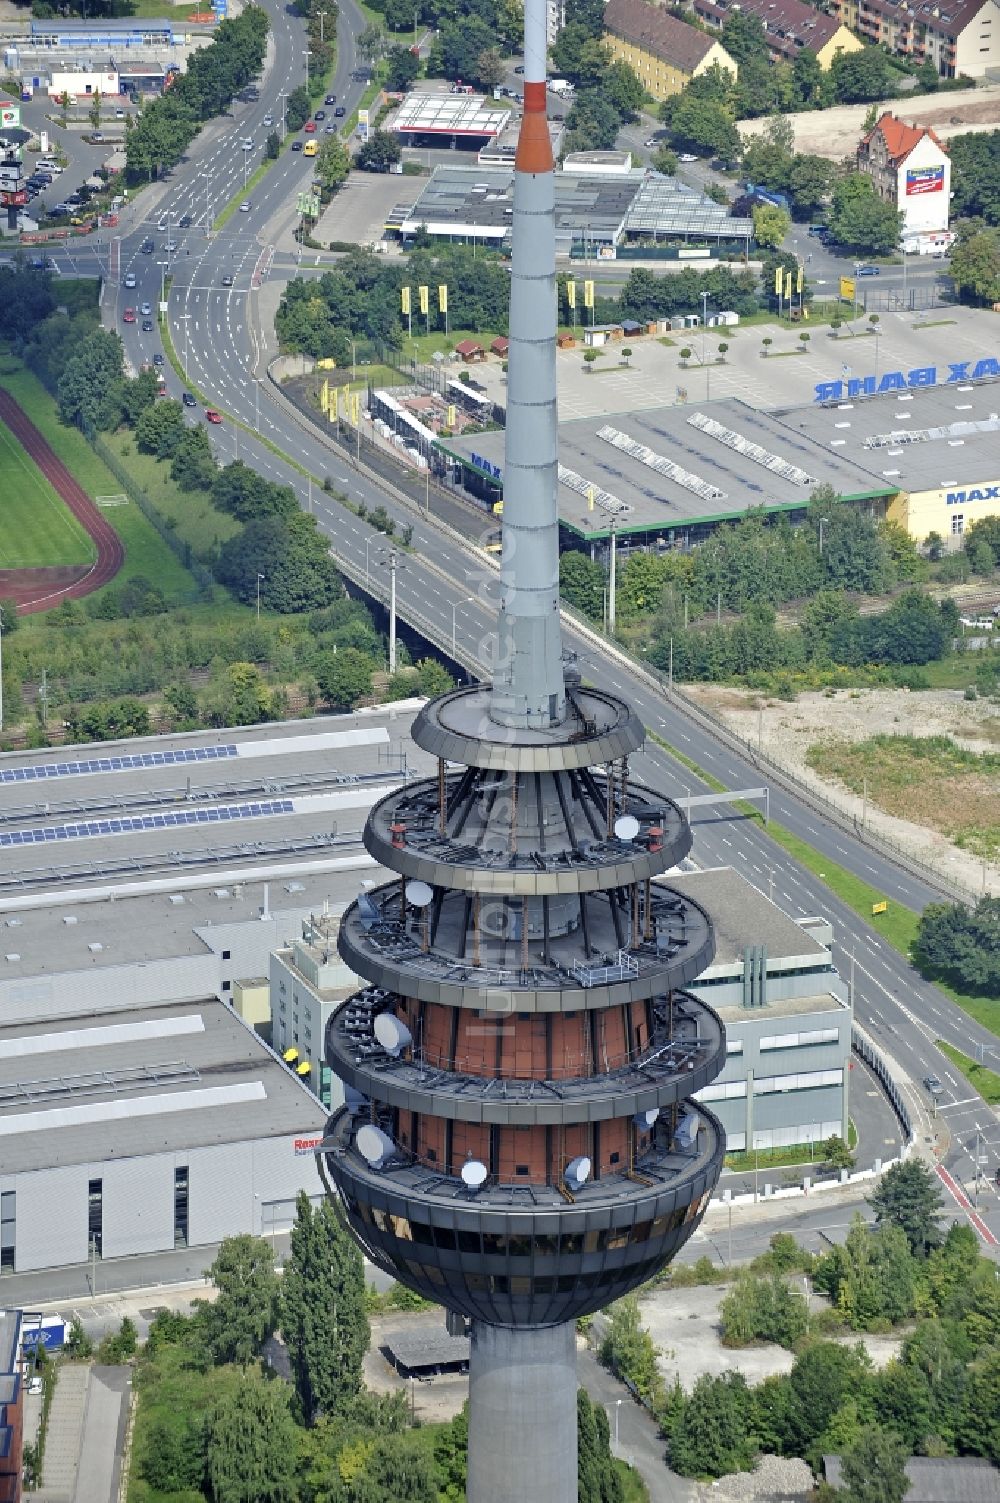 Luftbild Nürnberg - Fernmeldeturm und Fernsehturm in Nürnberg im Bundesland Bayern, Deutschland